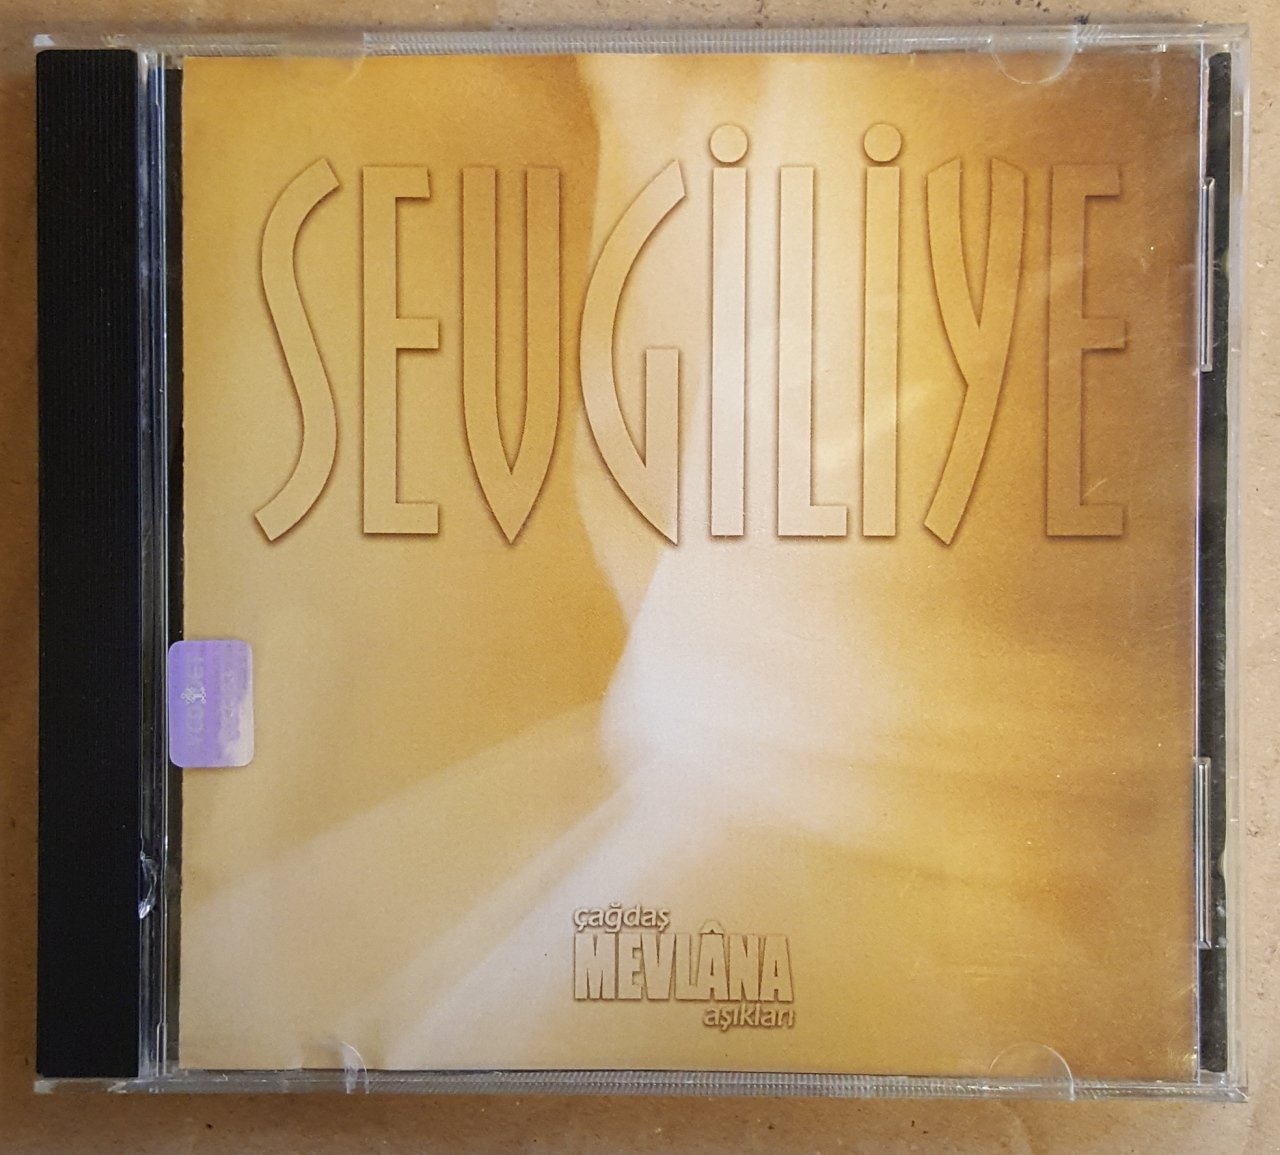 ÇAĞDAŞ MEVLANA AŞIKLARI - SEVGİLİYE (1999) - CD 2.EL